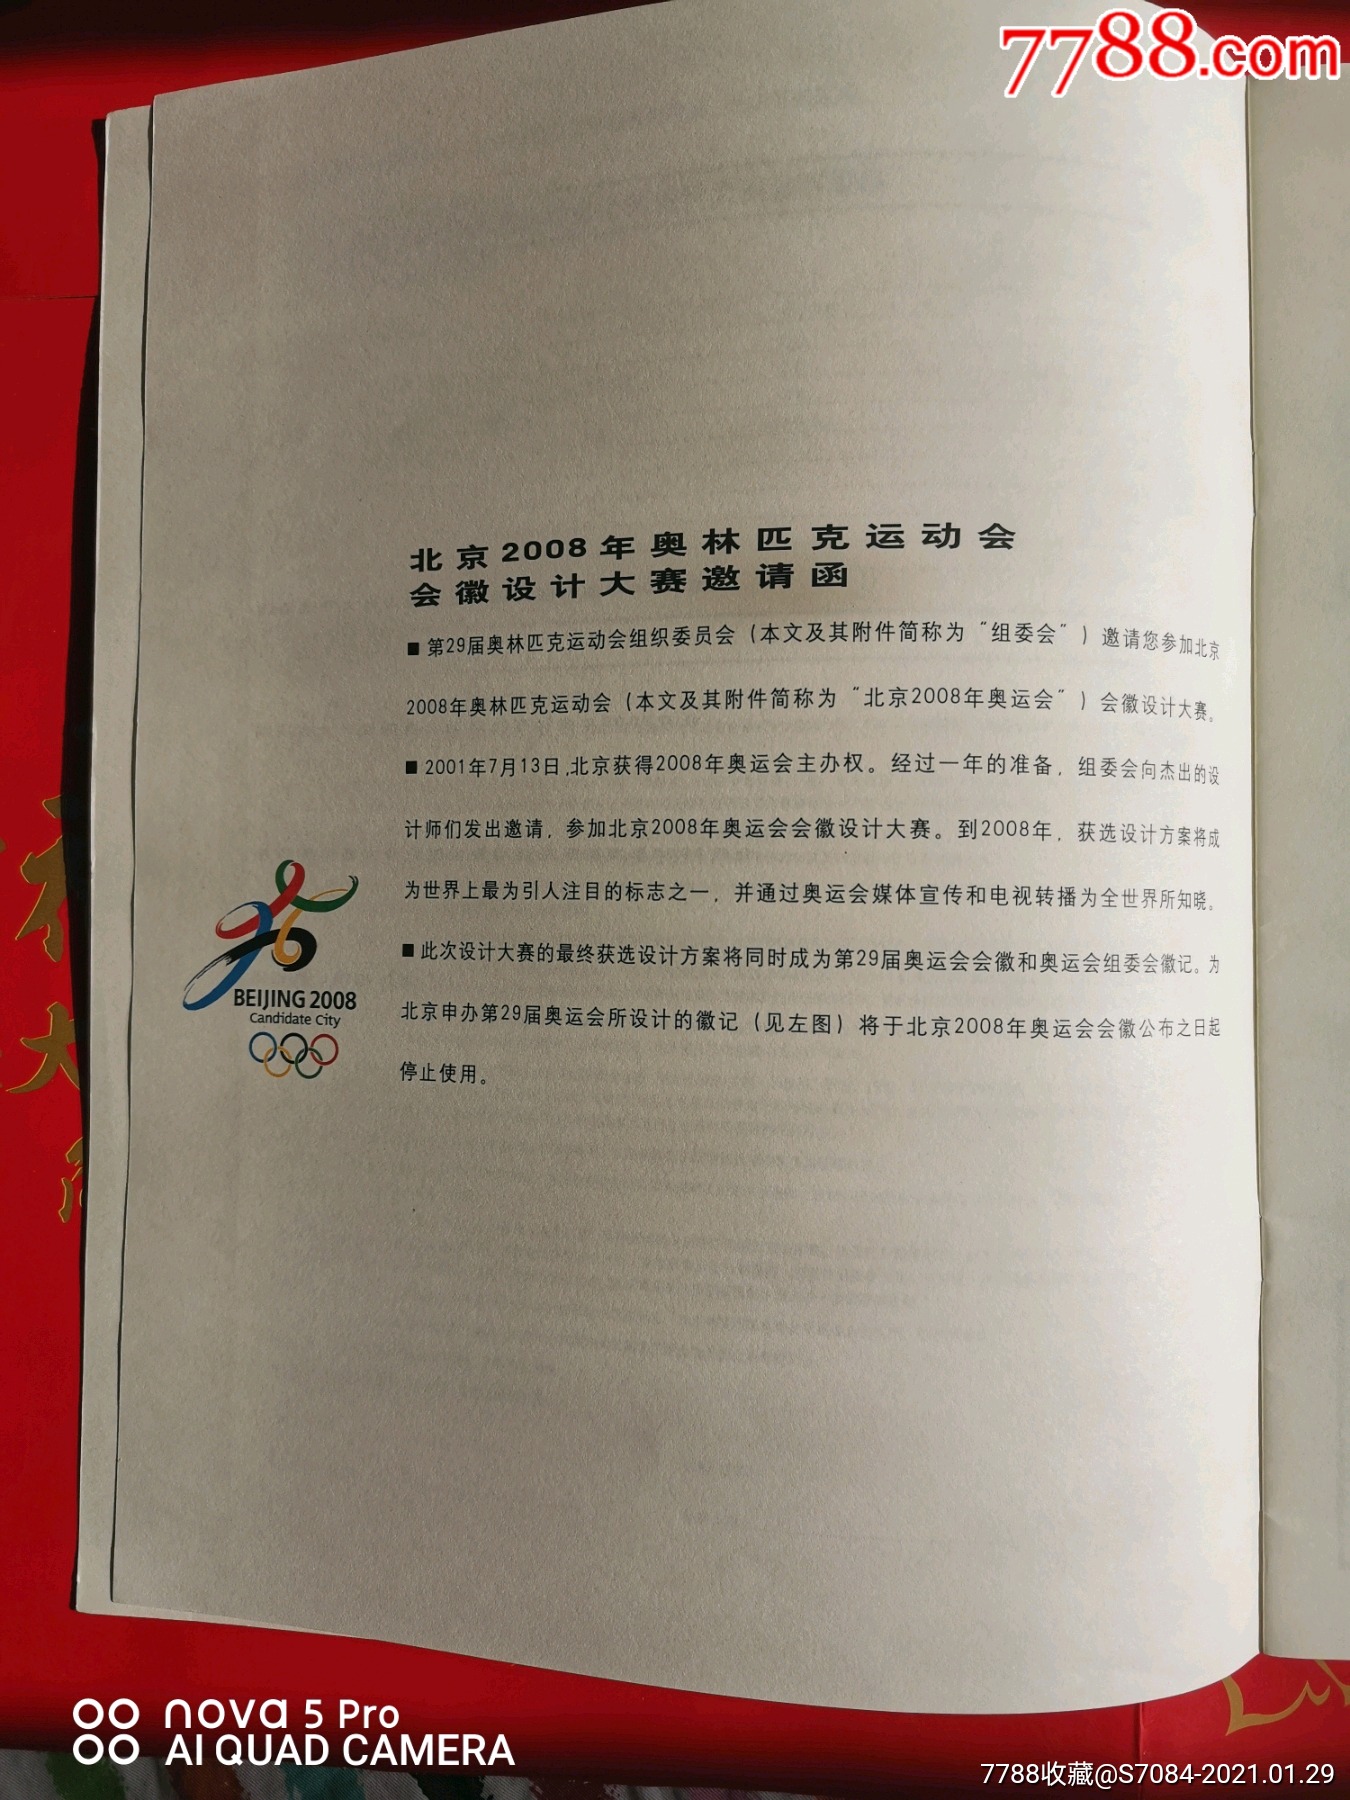 邀请函--北京2008年奥林匹克运动会会徽设计大赛邀请函(空白,中英文)